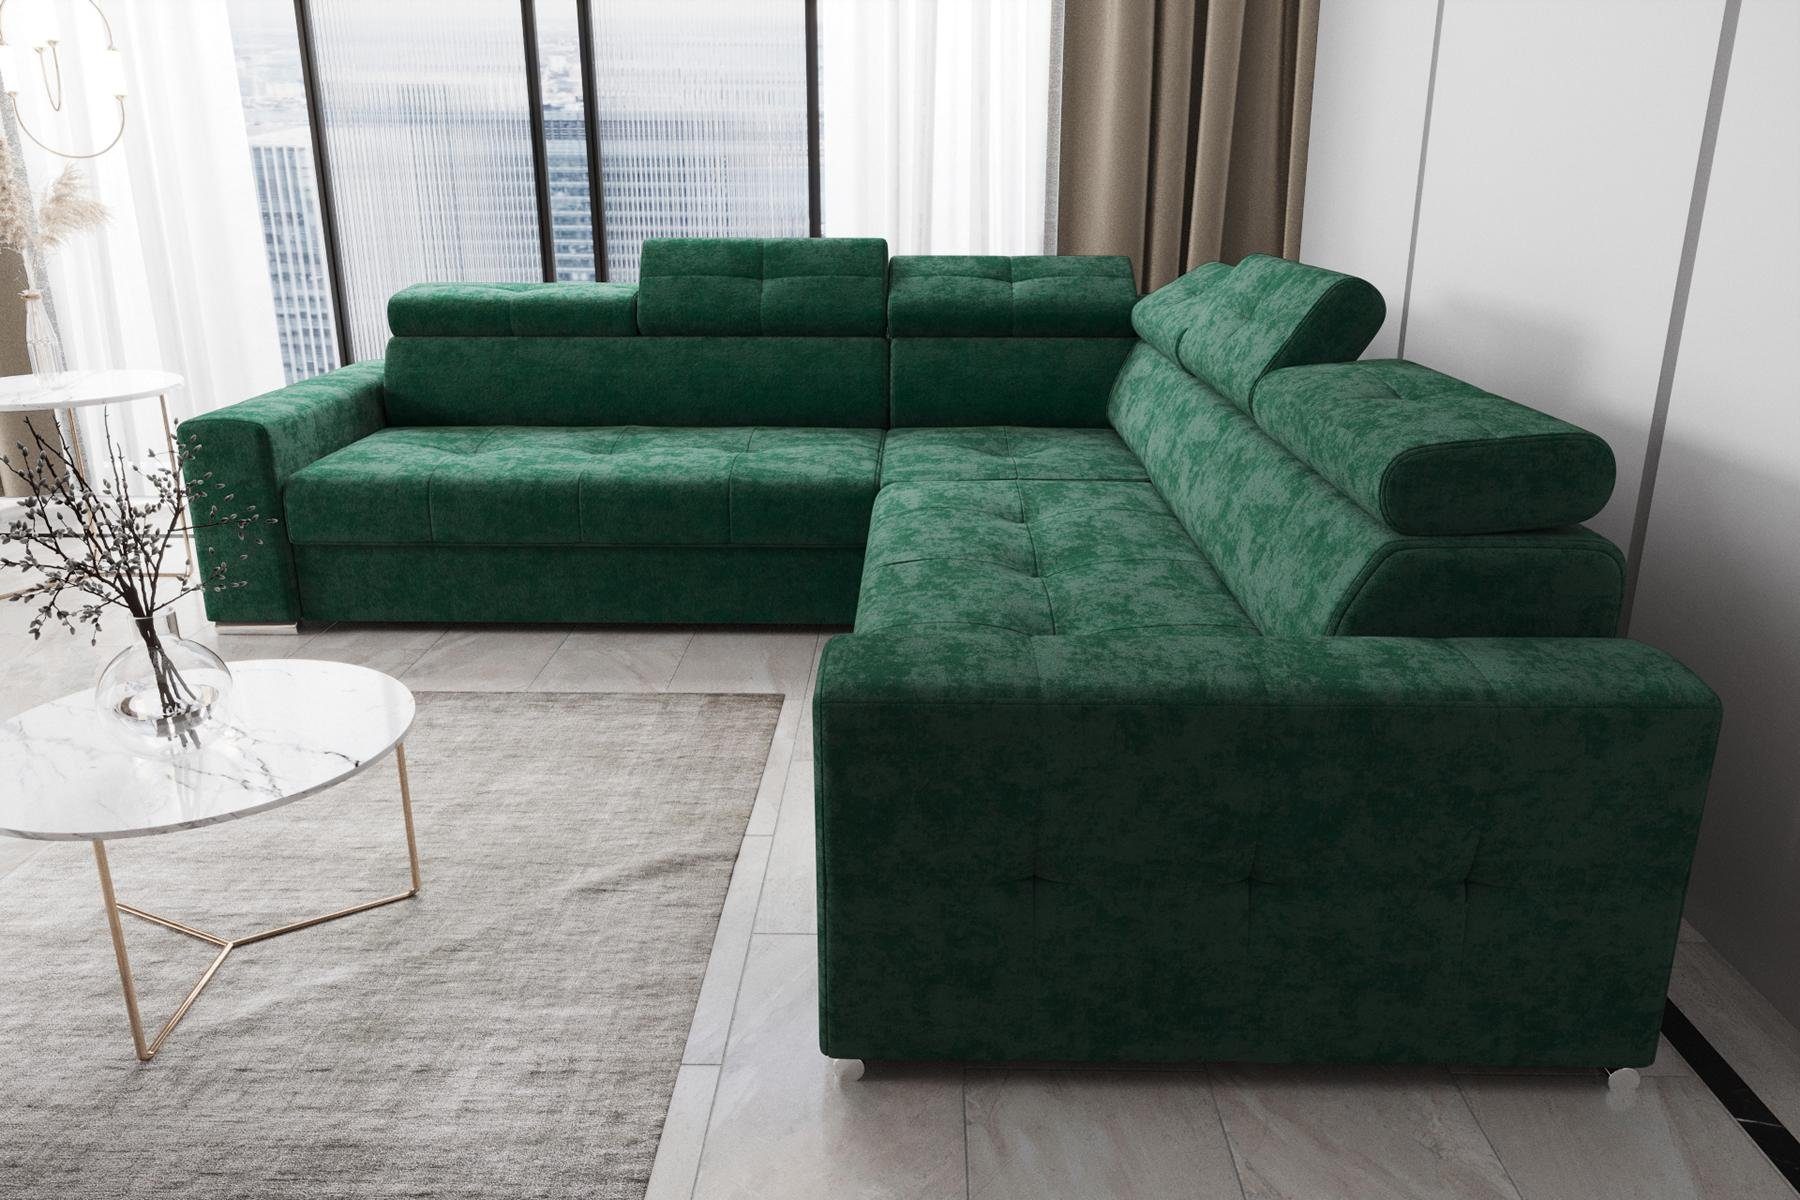 JVmoebel Ecksofa Wohnzimmer Textil Leder Luxus L Form Modern Ecksofa Couch, Made in Europe Grün